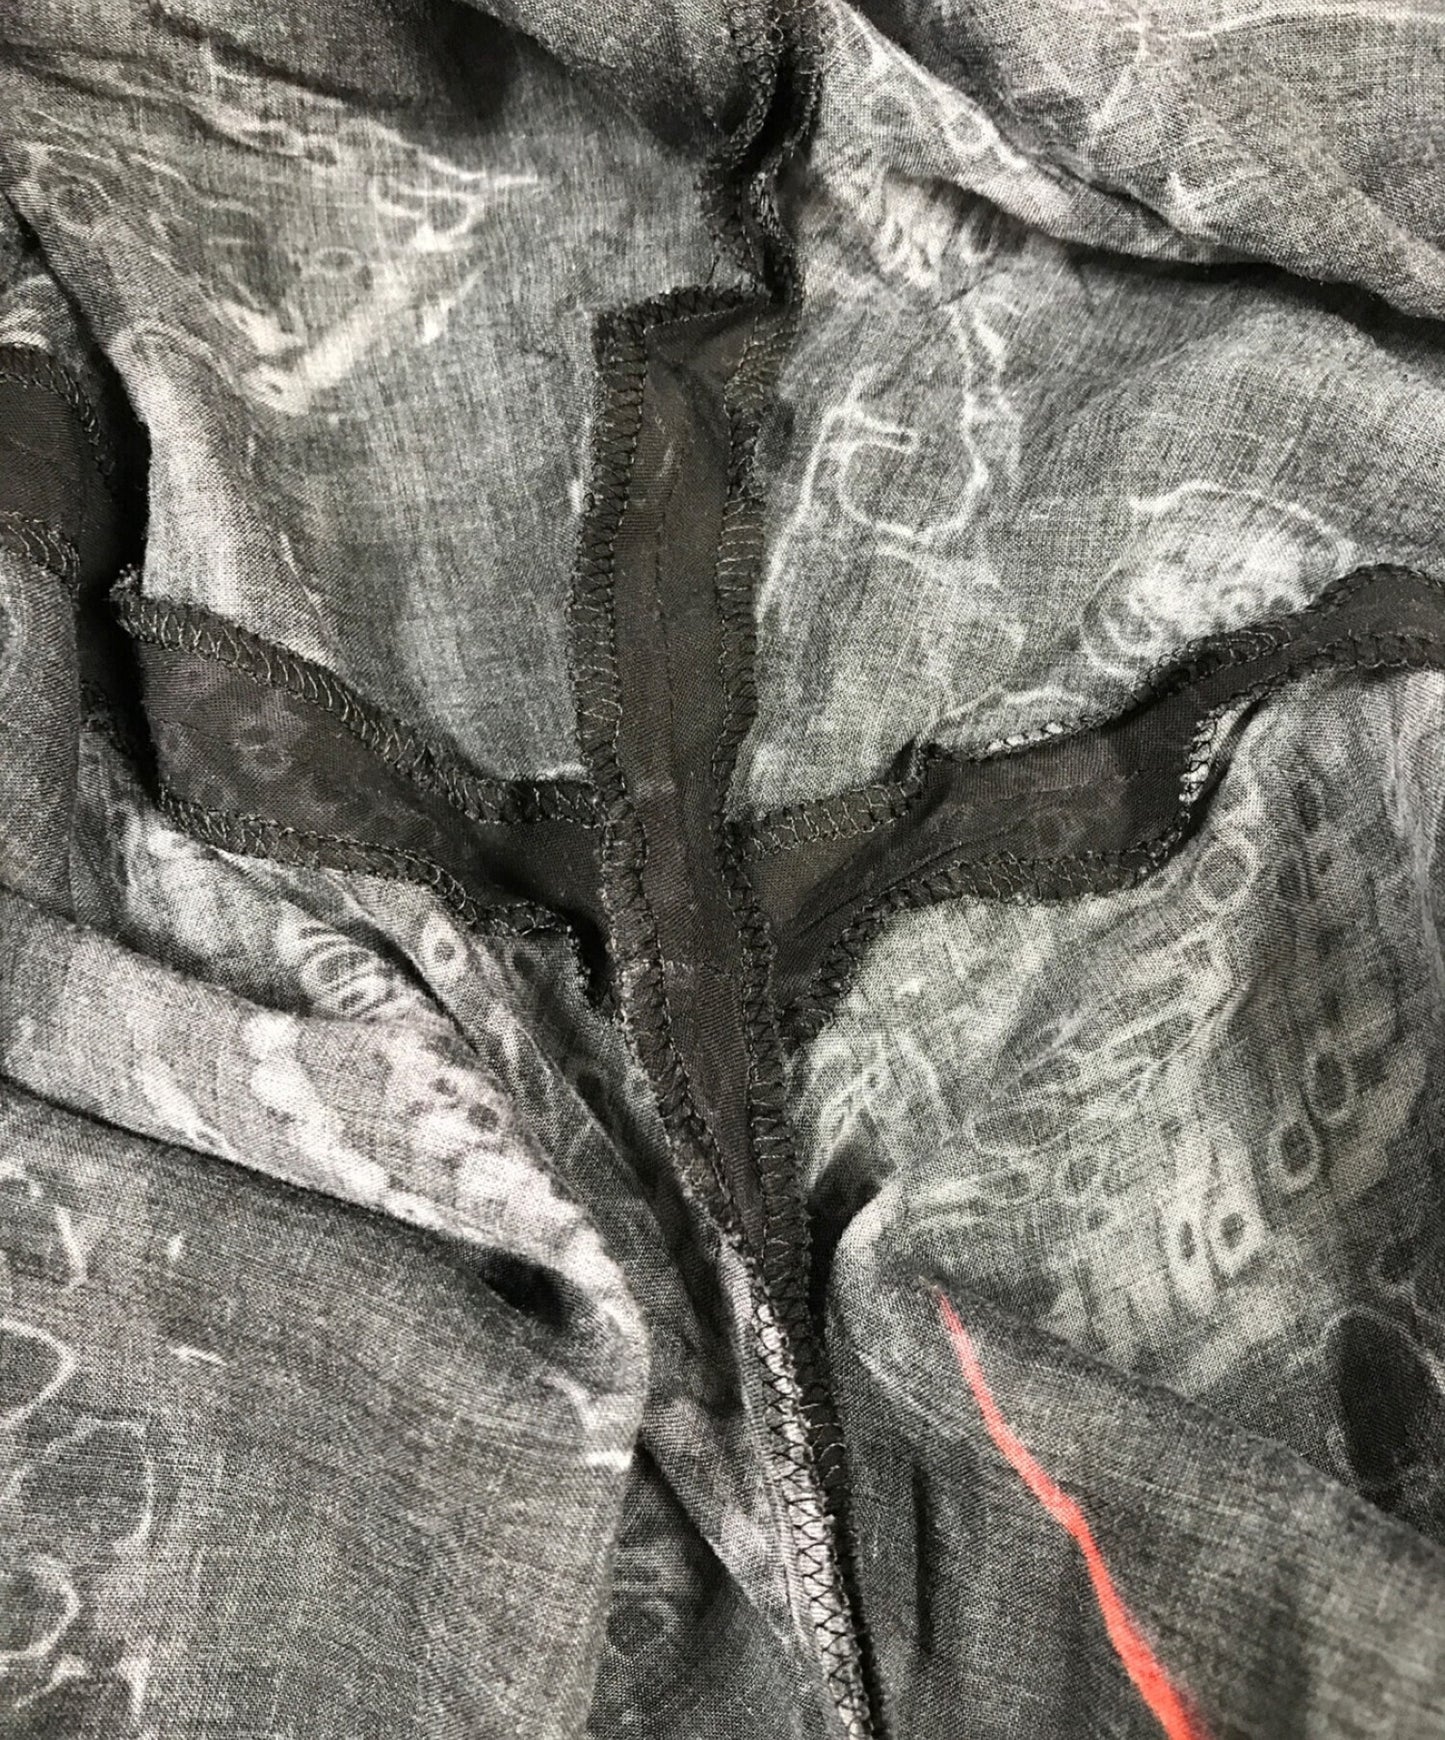 黑色醜聞Yohji Yamamoto收集的拉鍊褲印刷A/寬褲子HH-P54-249